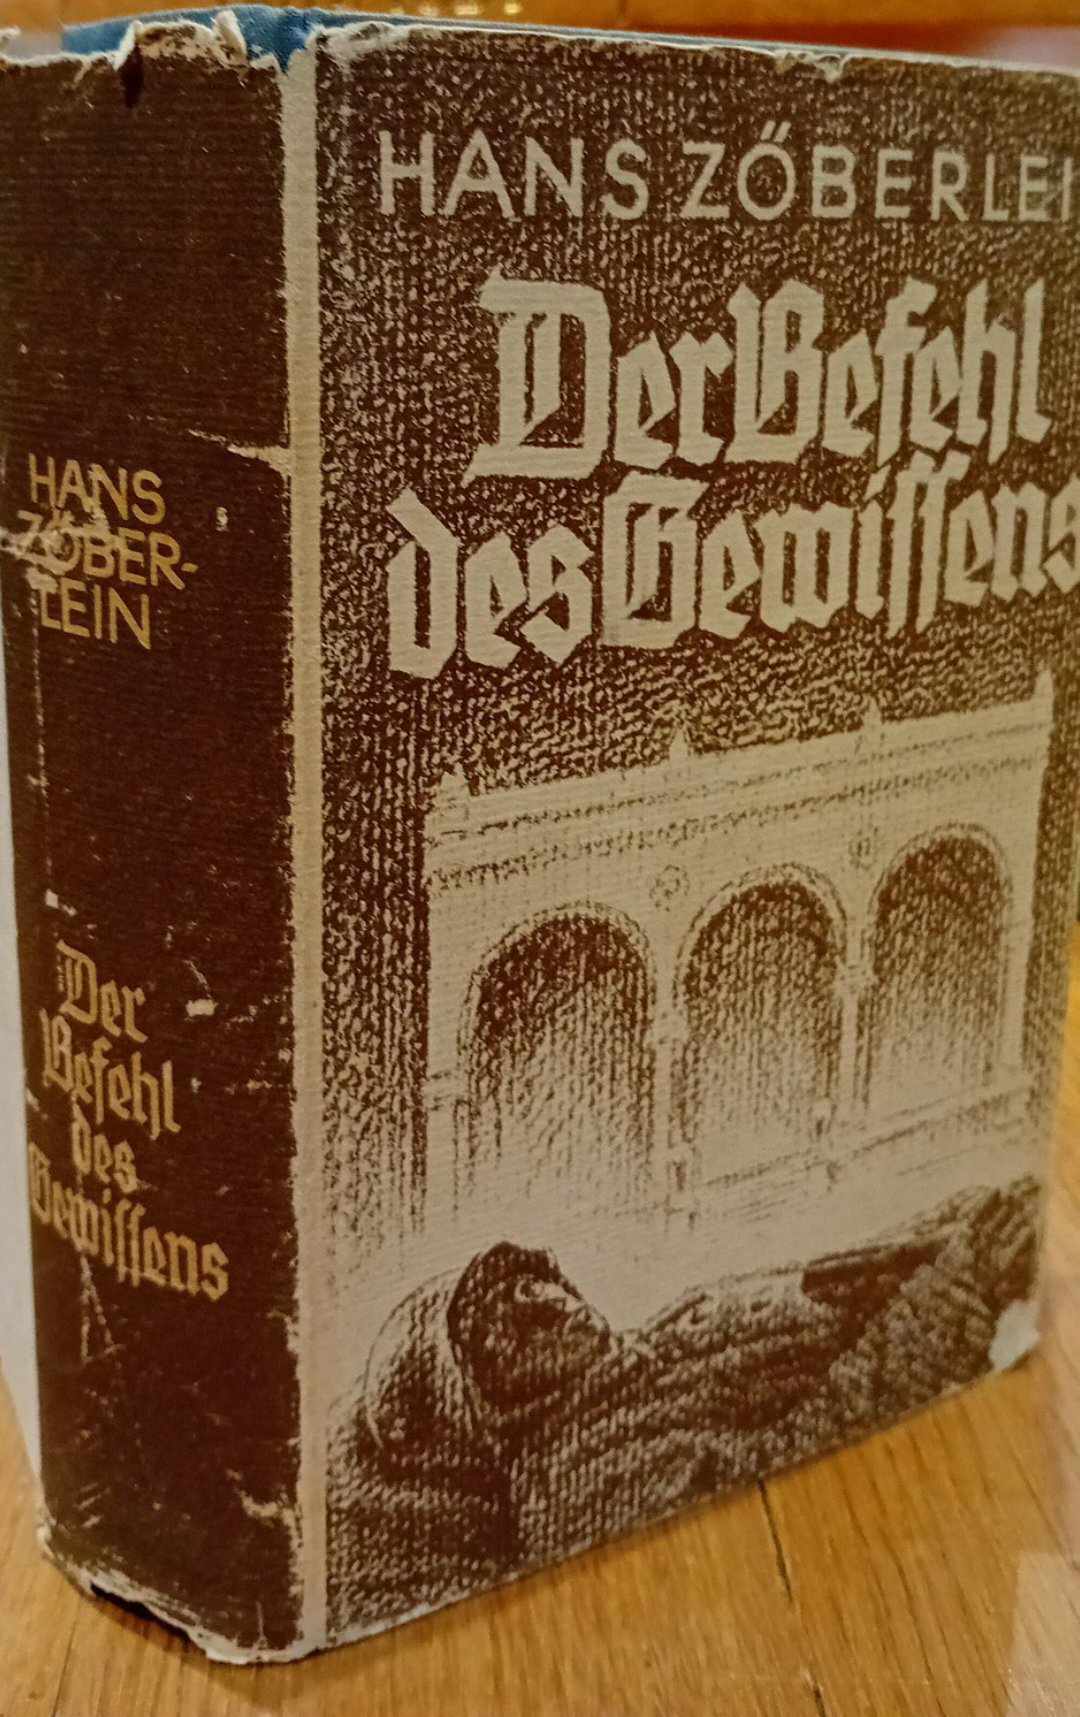 Der Befehl des Geissens - Hans Zoberlein 1938 / 990 blz